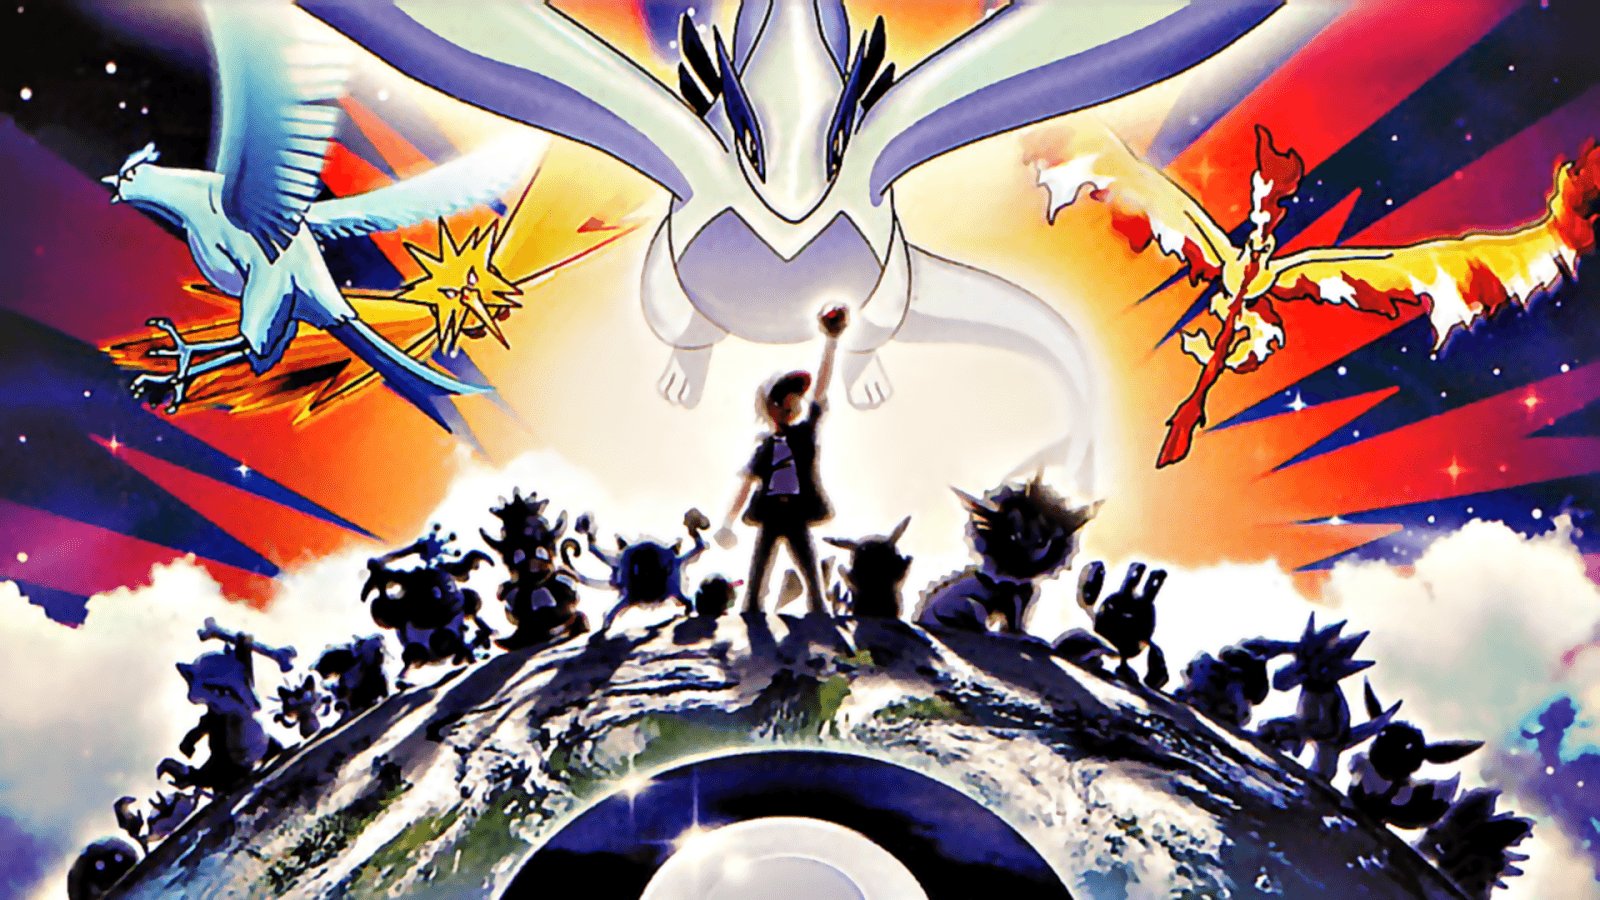 Legendary Pokemon Png For Computer - Pokemon 2000 - 1600x900 Wallpaper -  